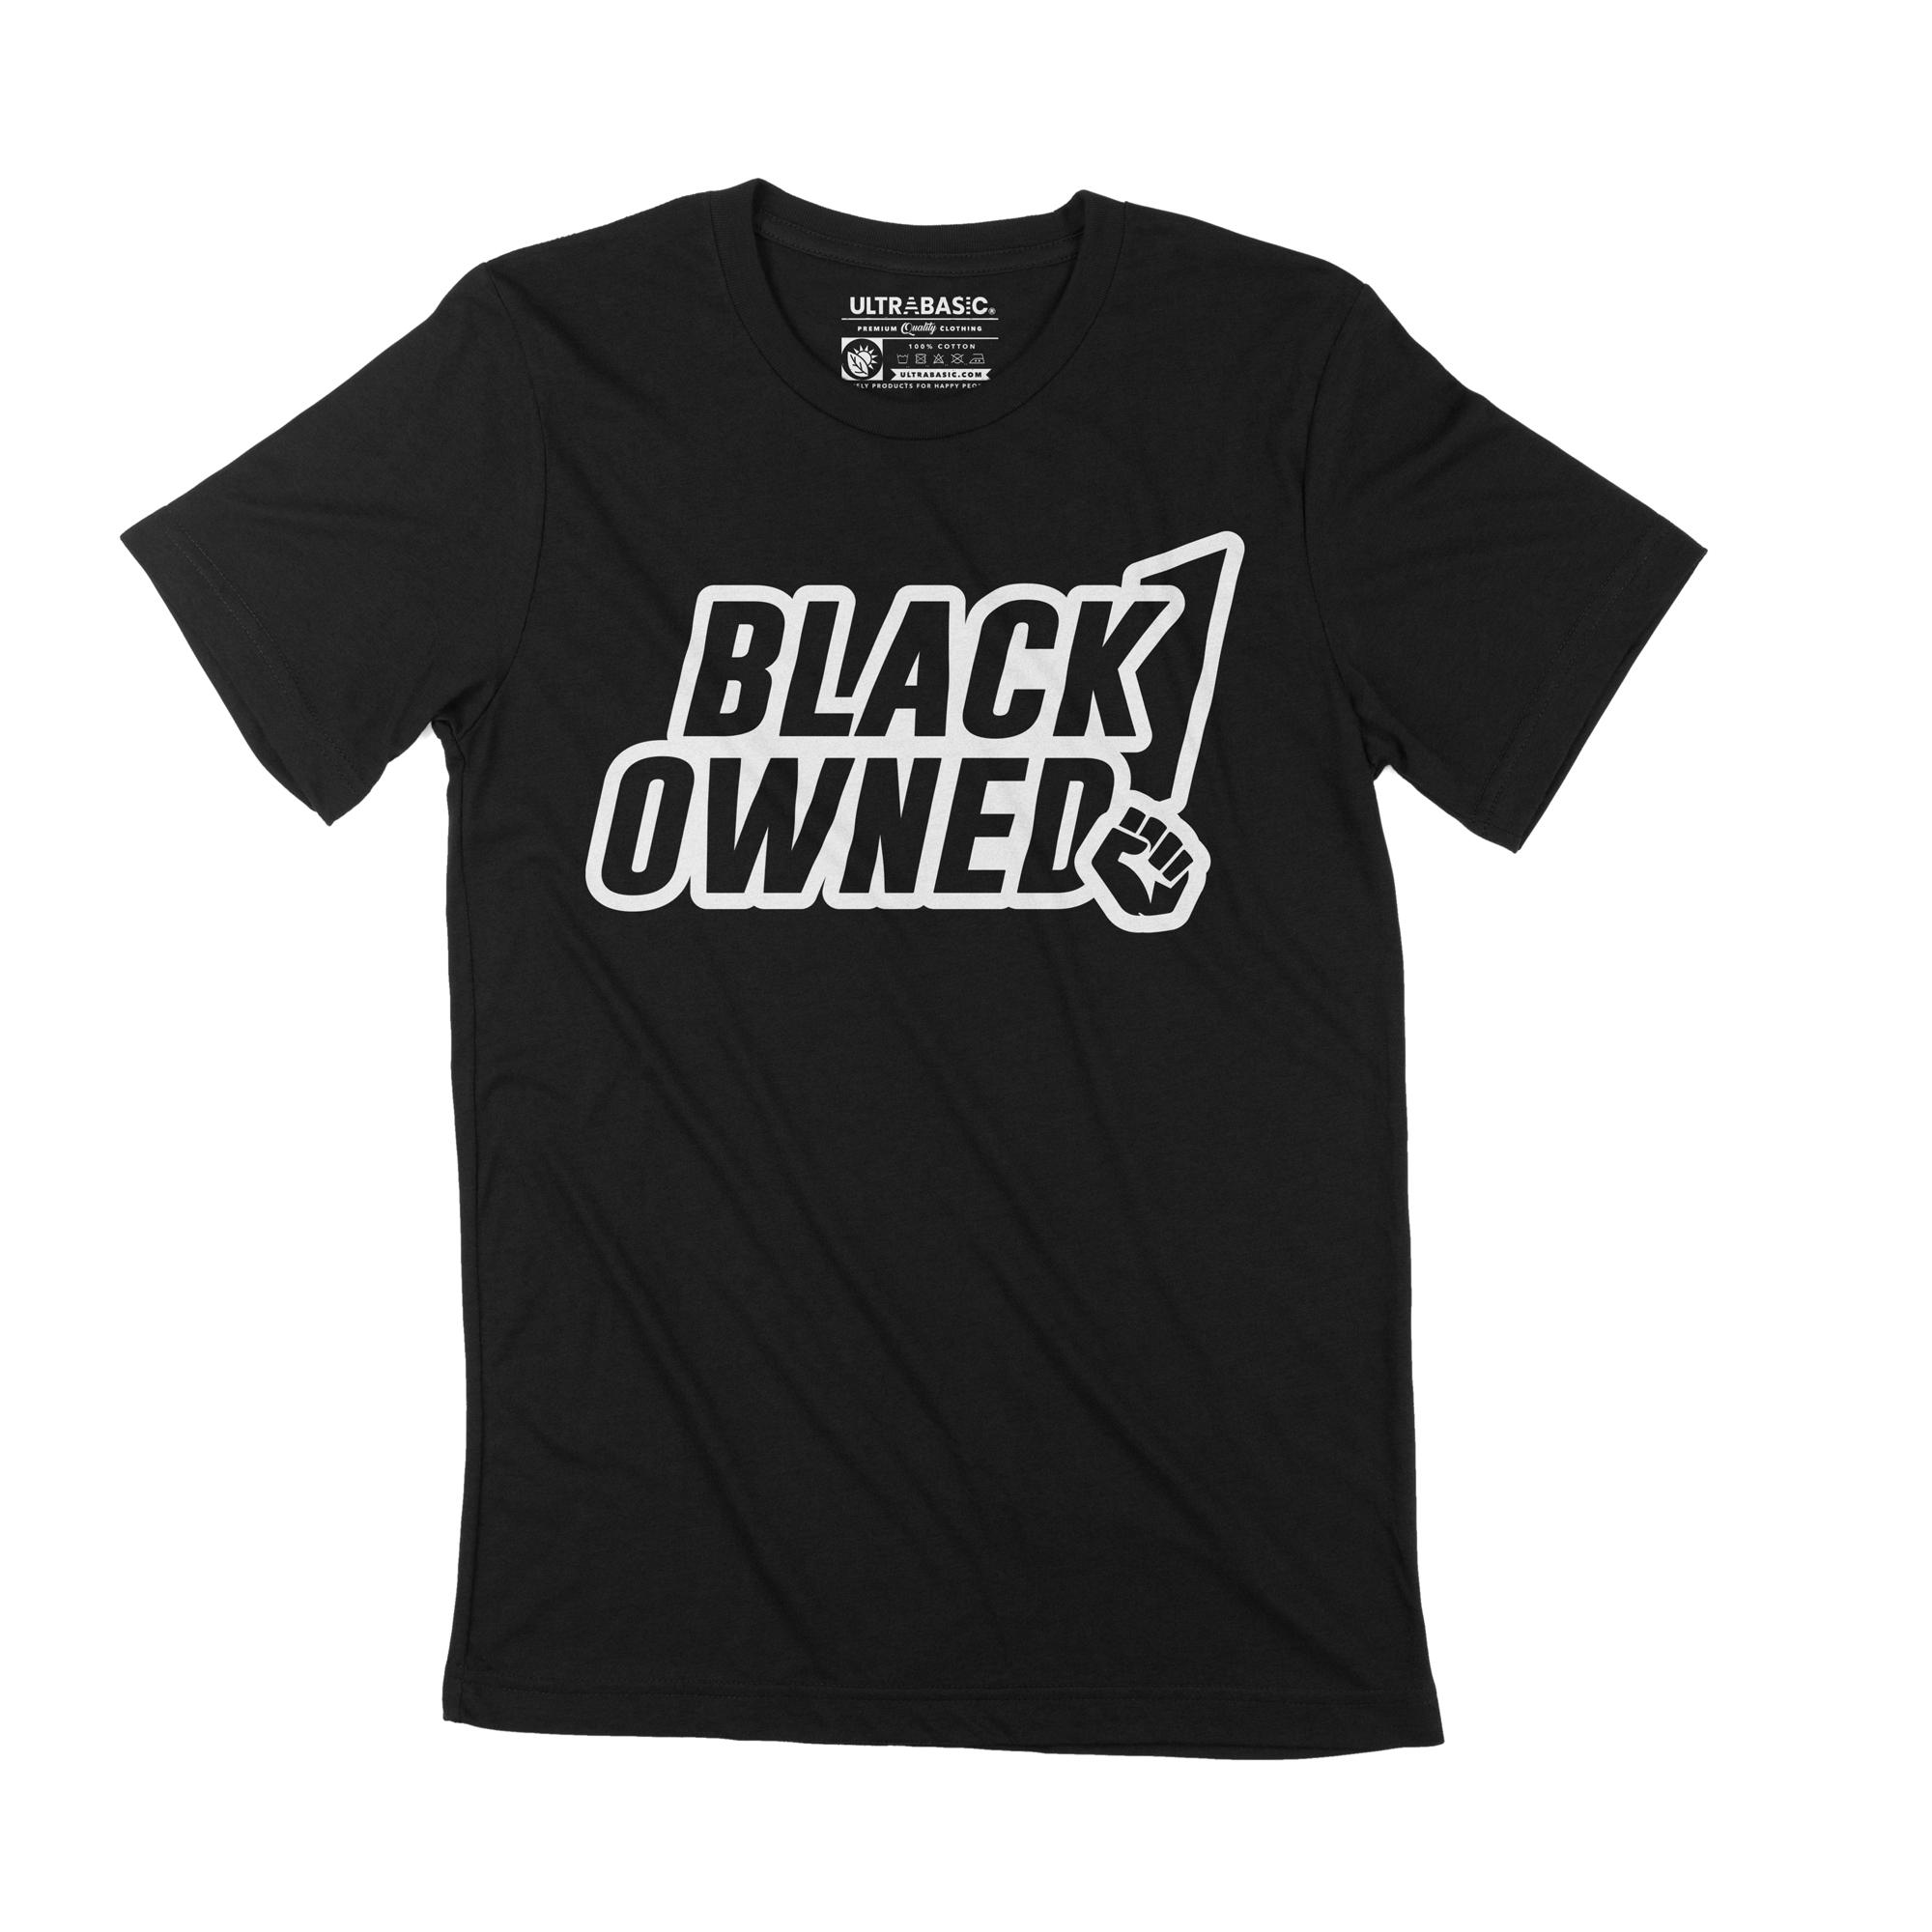 Ultrabasic grafisch T-shirt voor heren, zwart Owned Black Lives Matter BLM-shirt